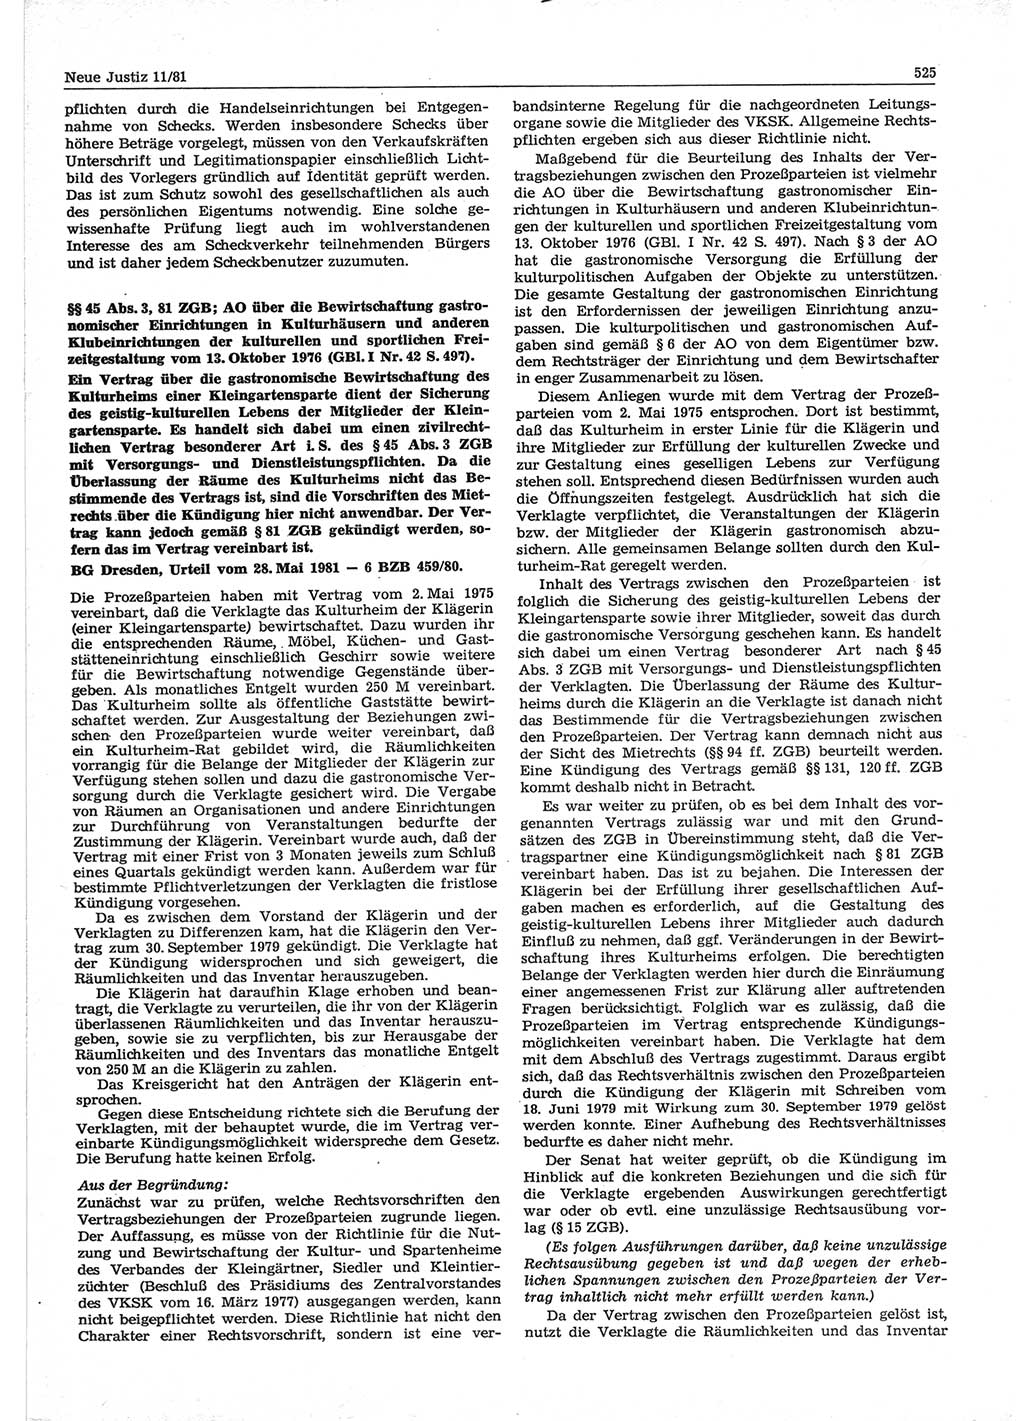 Neue Justiz (NJ), Zeitschrift für sozialistisches Recht und Gesetzlichkeit [Deutsche Demokratische Republik (DDR)], 35. Jahrgang 1981, Seite 525 (NJ DDR 1981, S. 525)